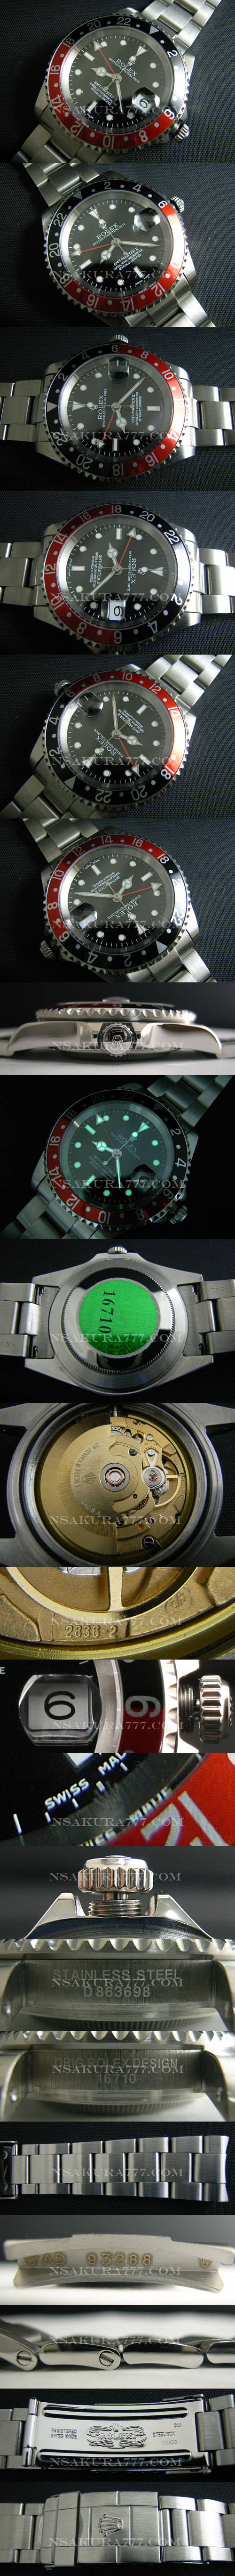 レプリカ時計ロレックス2836-2ムーブ搭載 GMT針単独調整可能 - ウインドウを閉じる